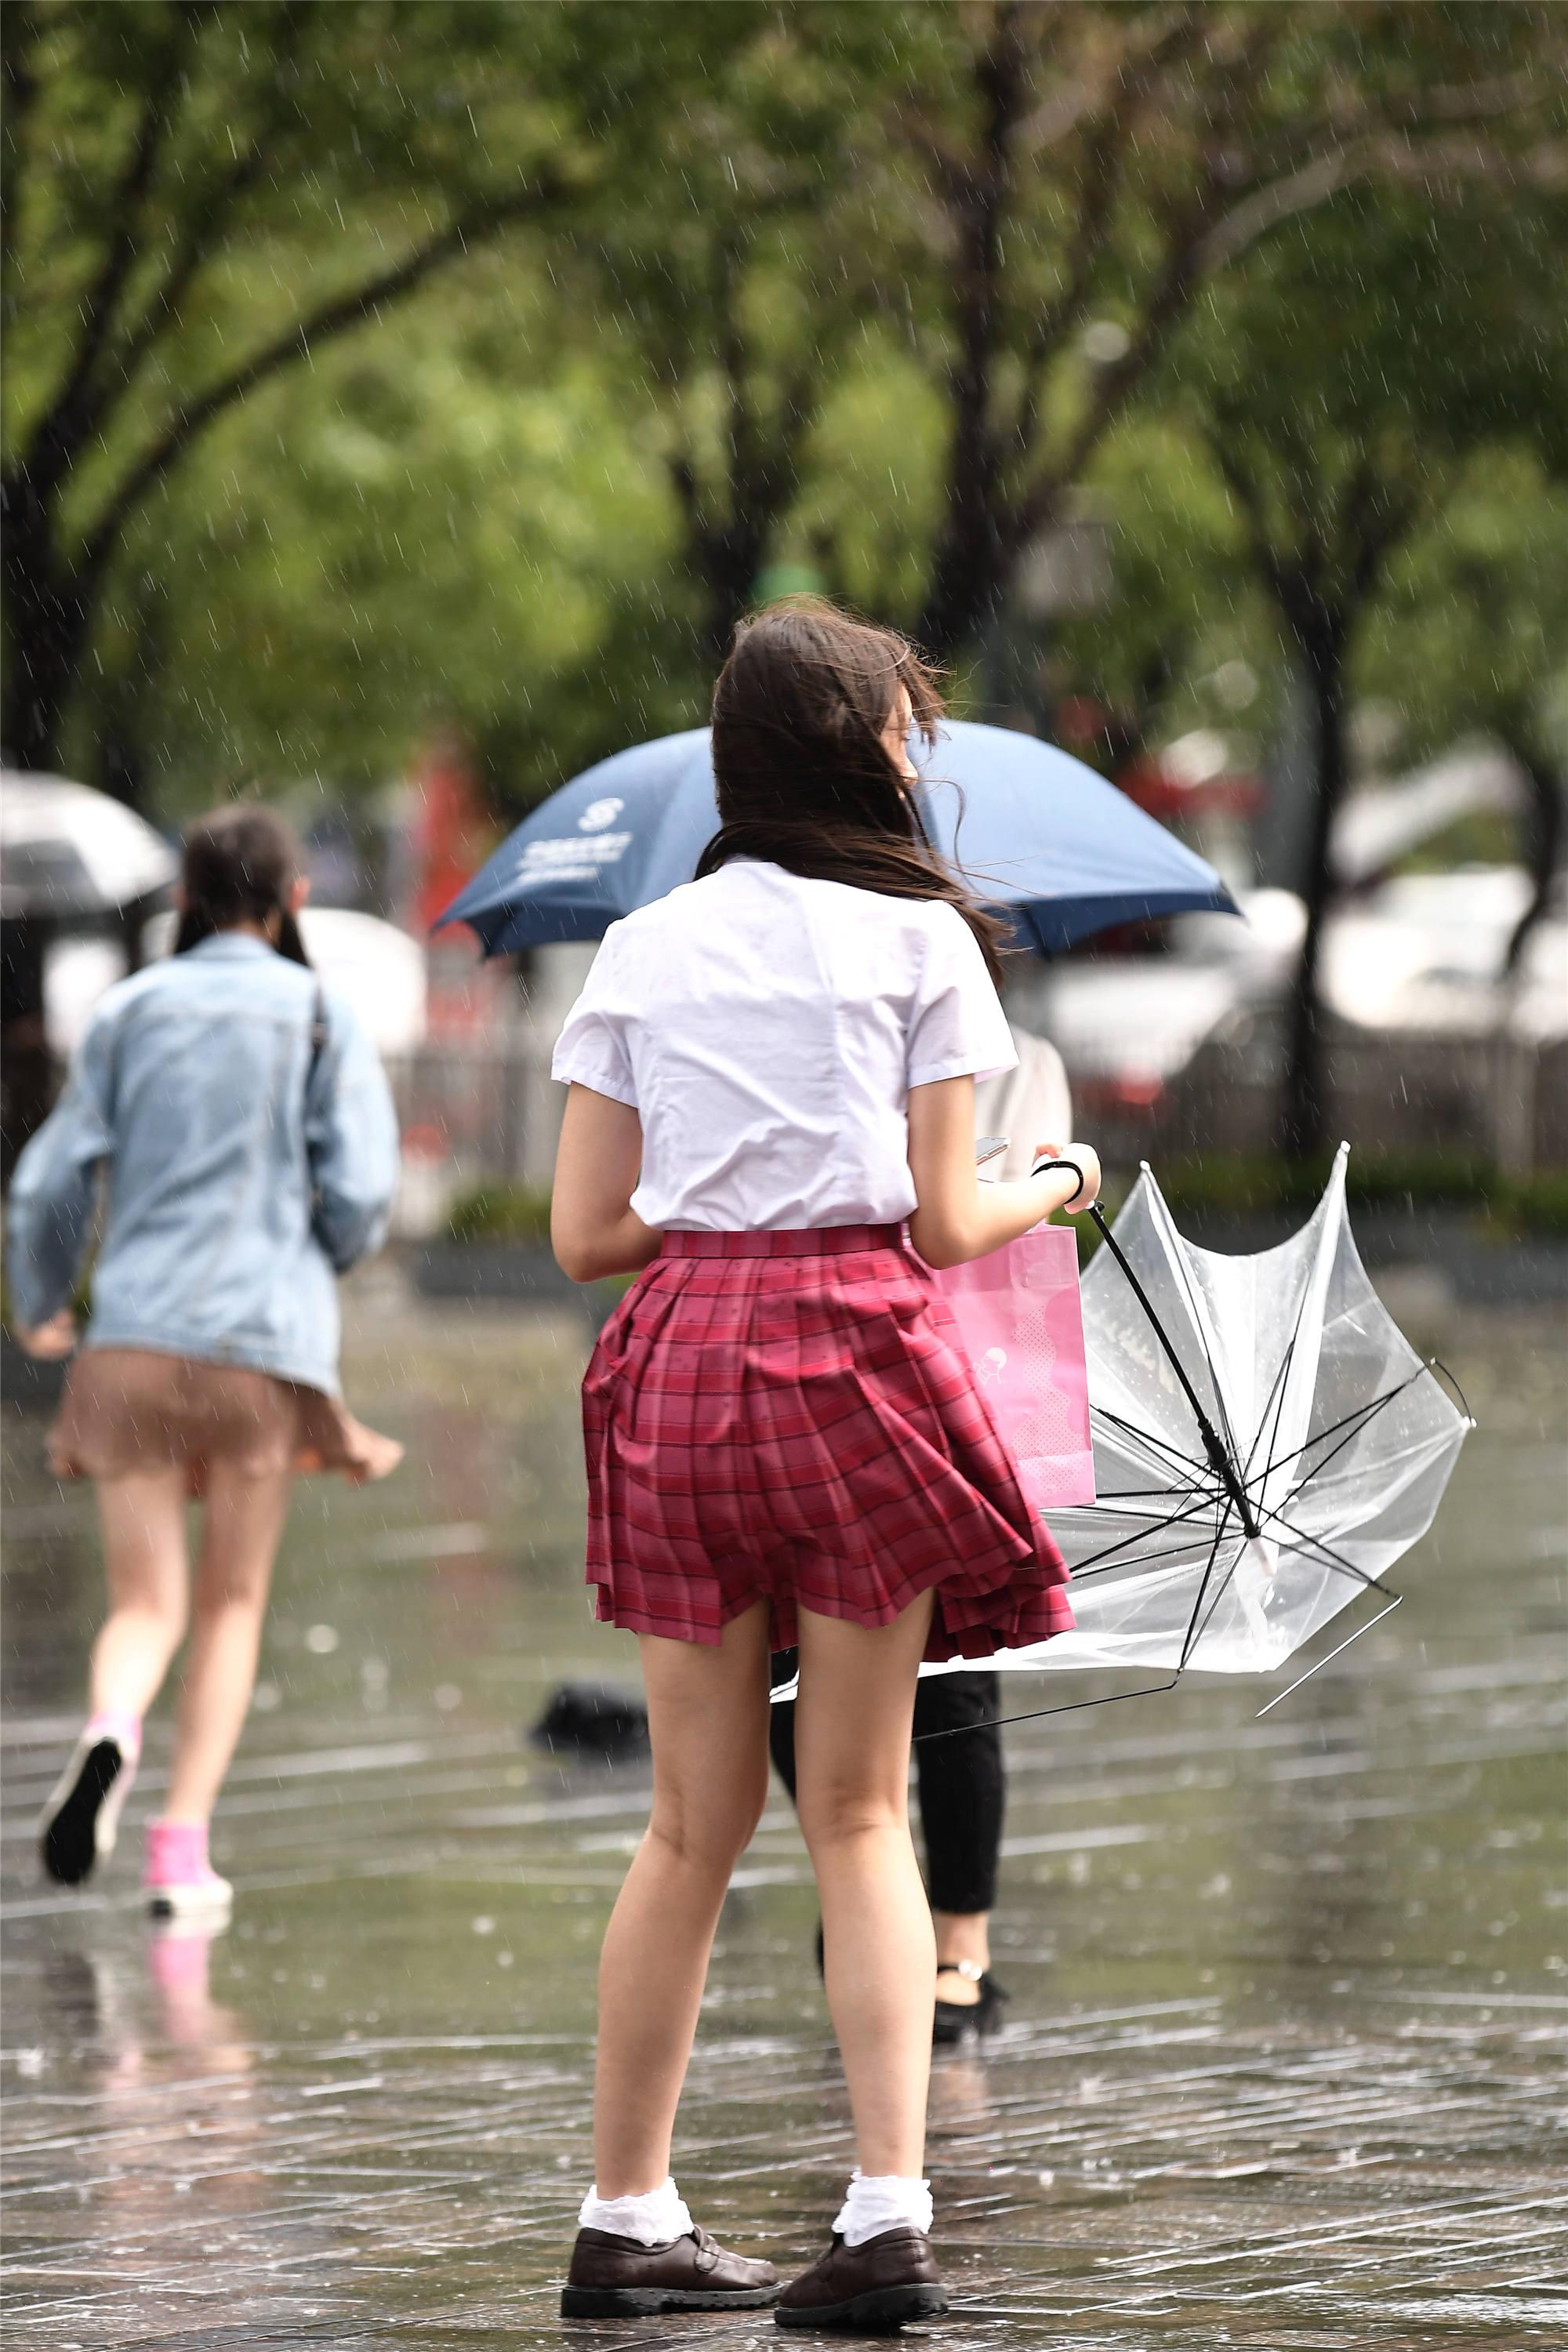 姑娘为了遮雨,买了把透明雨伞,却被风吹坏,是雨